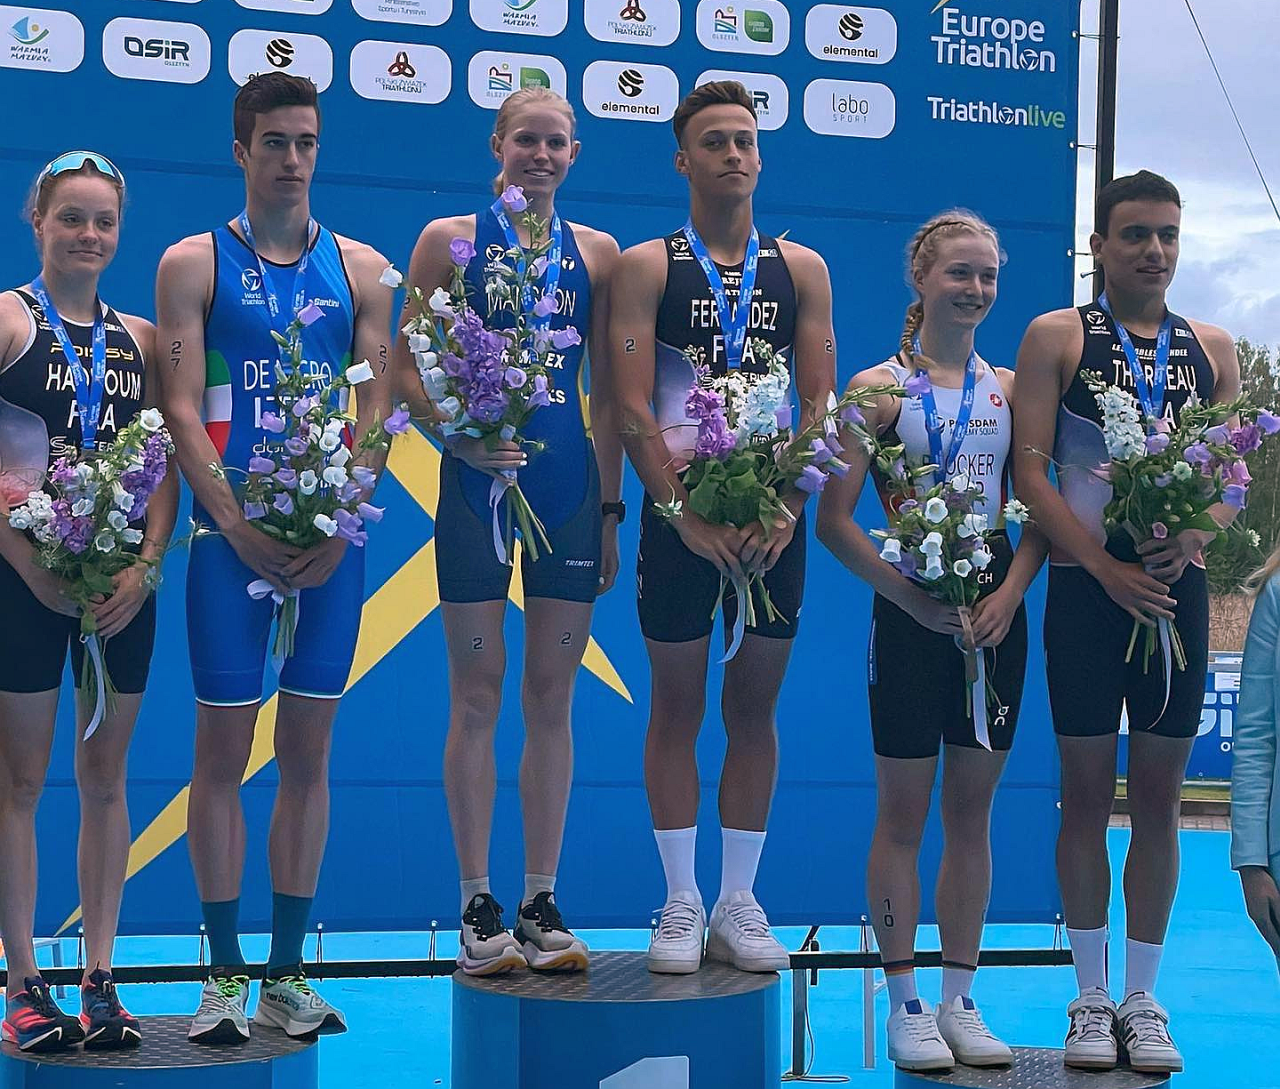 Il podio degli Europei Junior di Triathlon 2022 a Olsztyn, il nostro Euan De Nigro è secondo